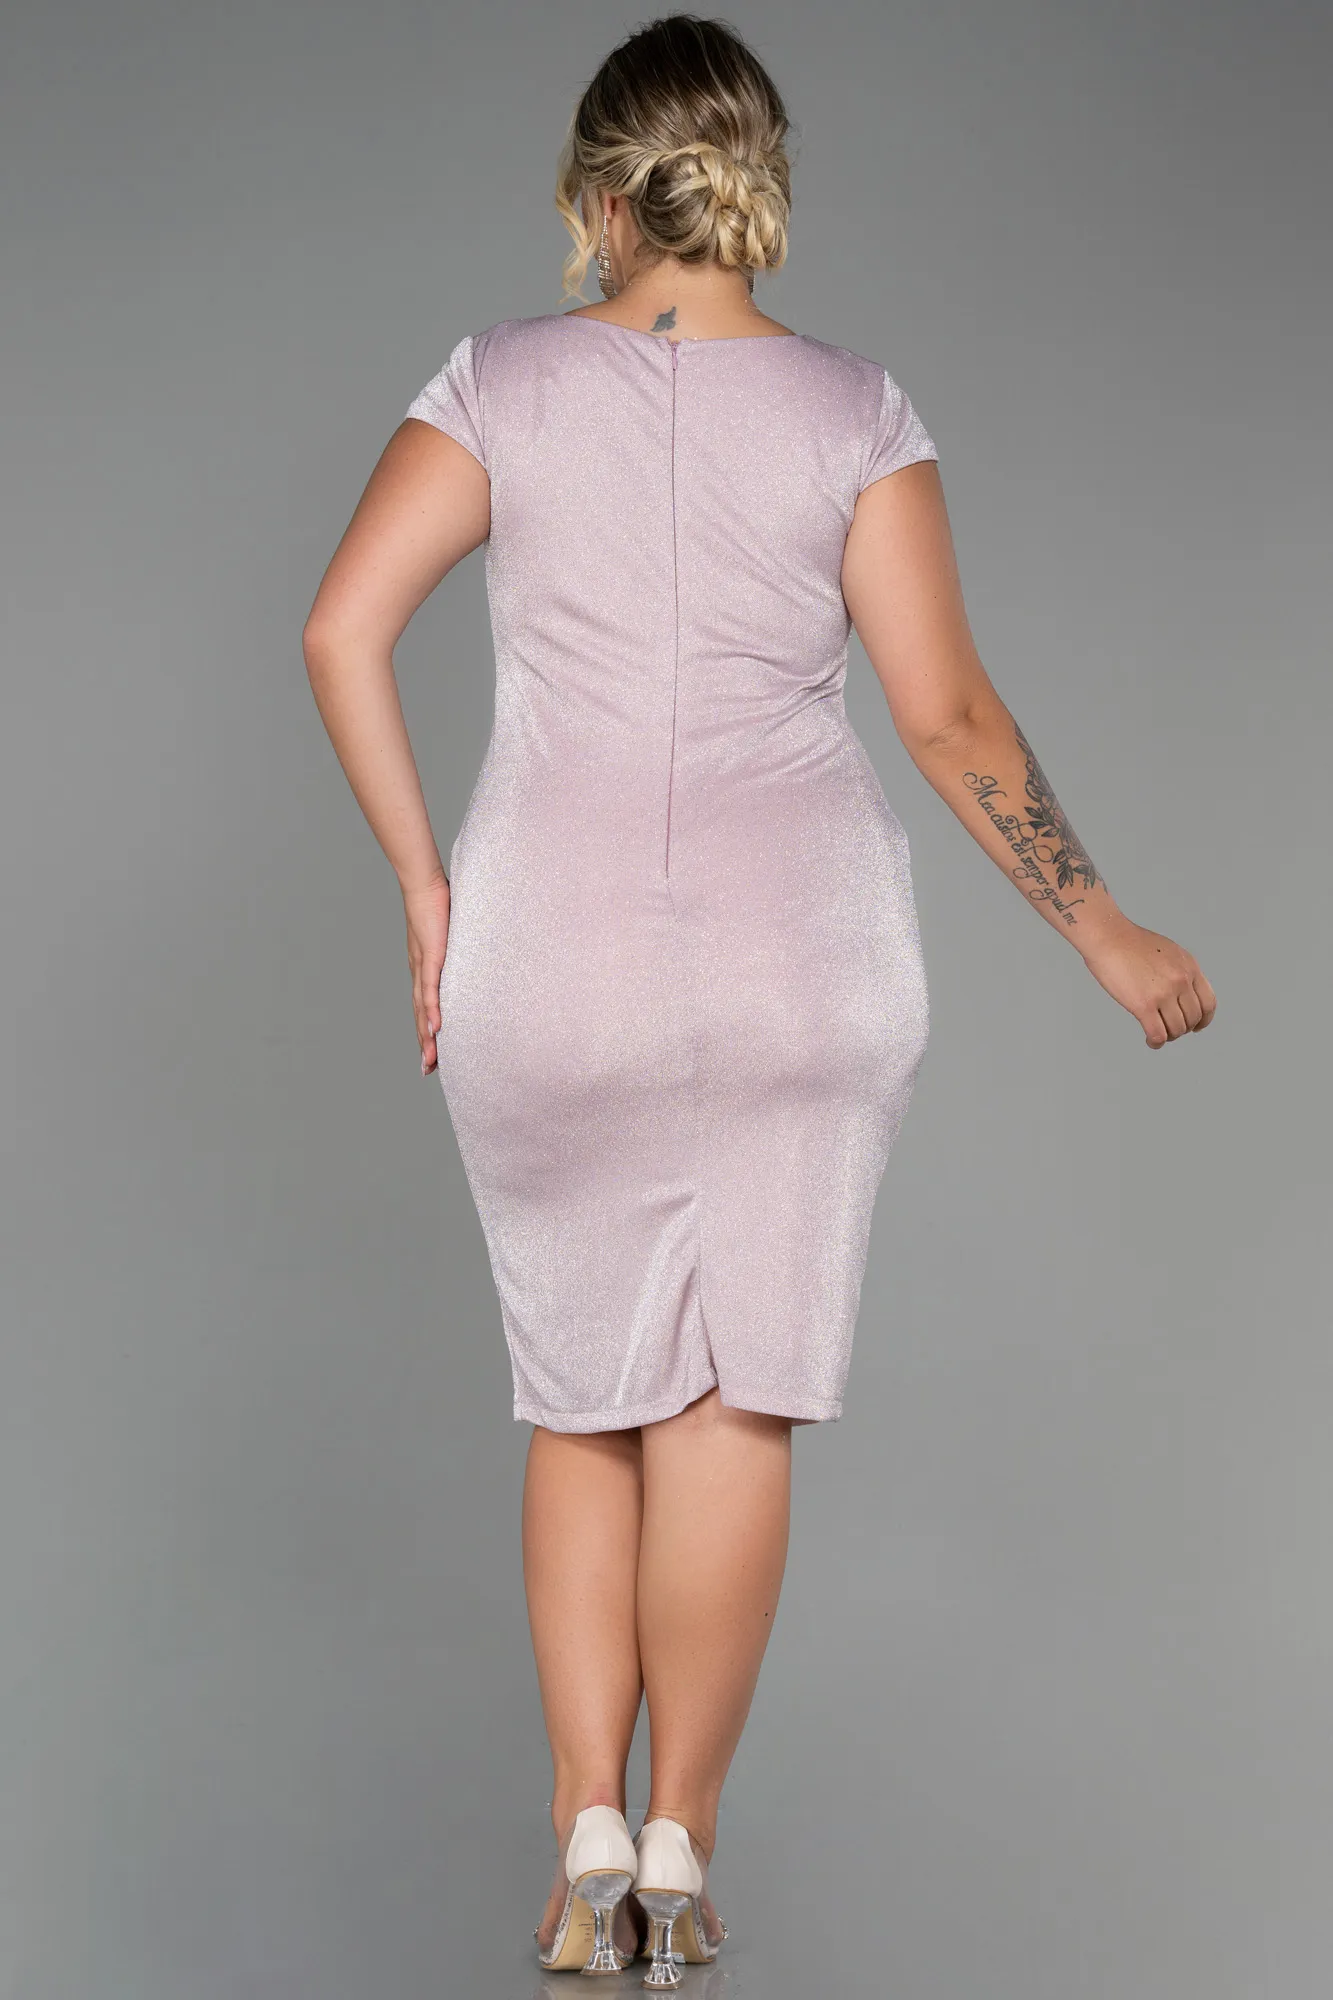 Powder Color-Short Plus Size Evening Dress ABK1583